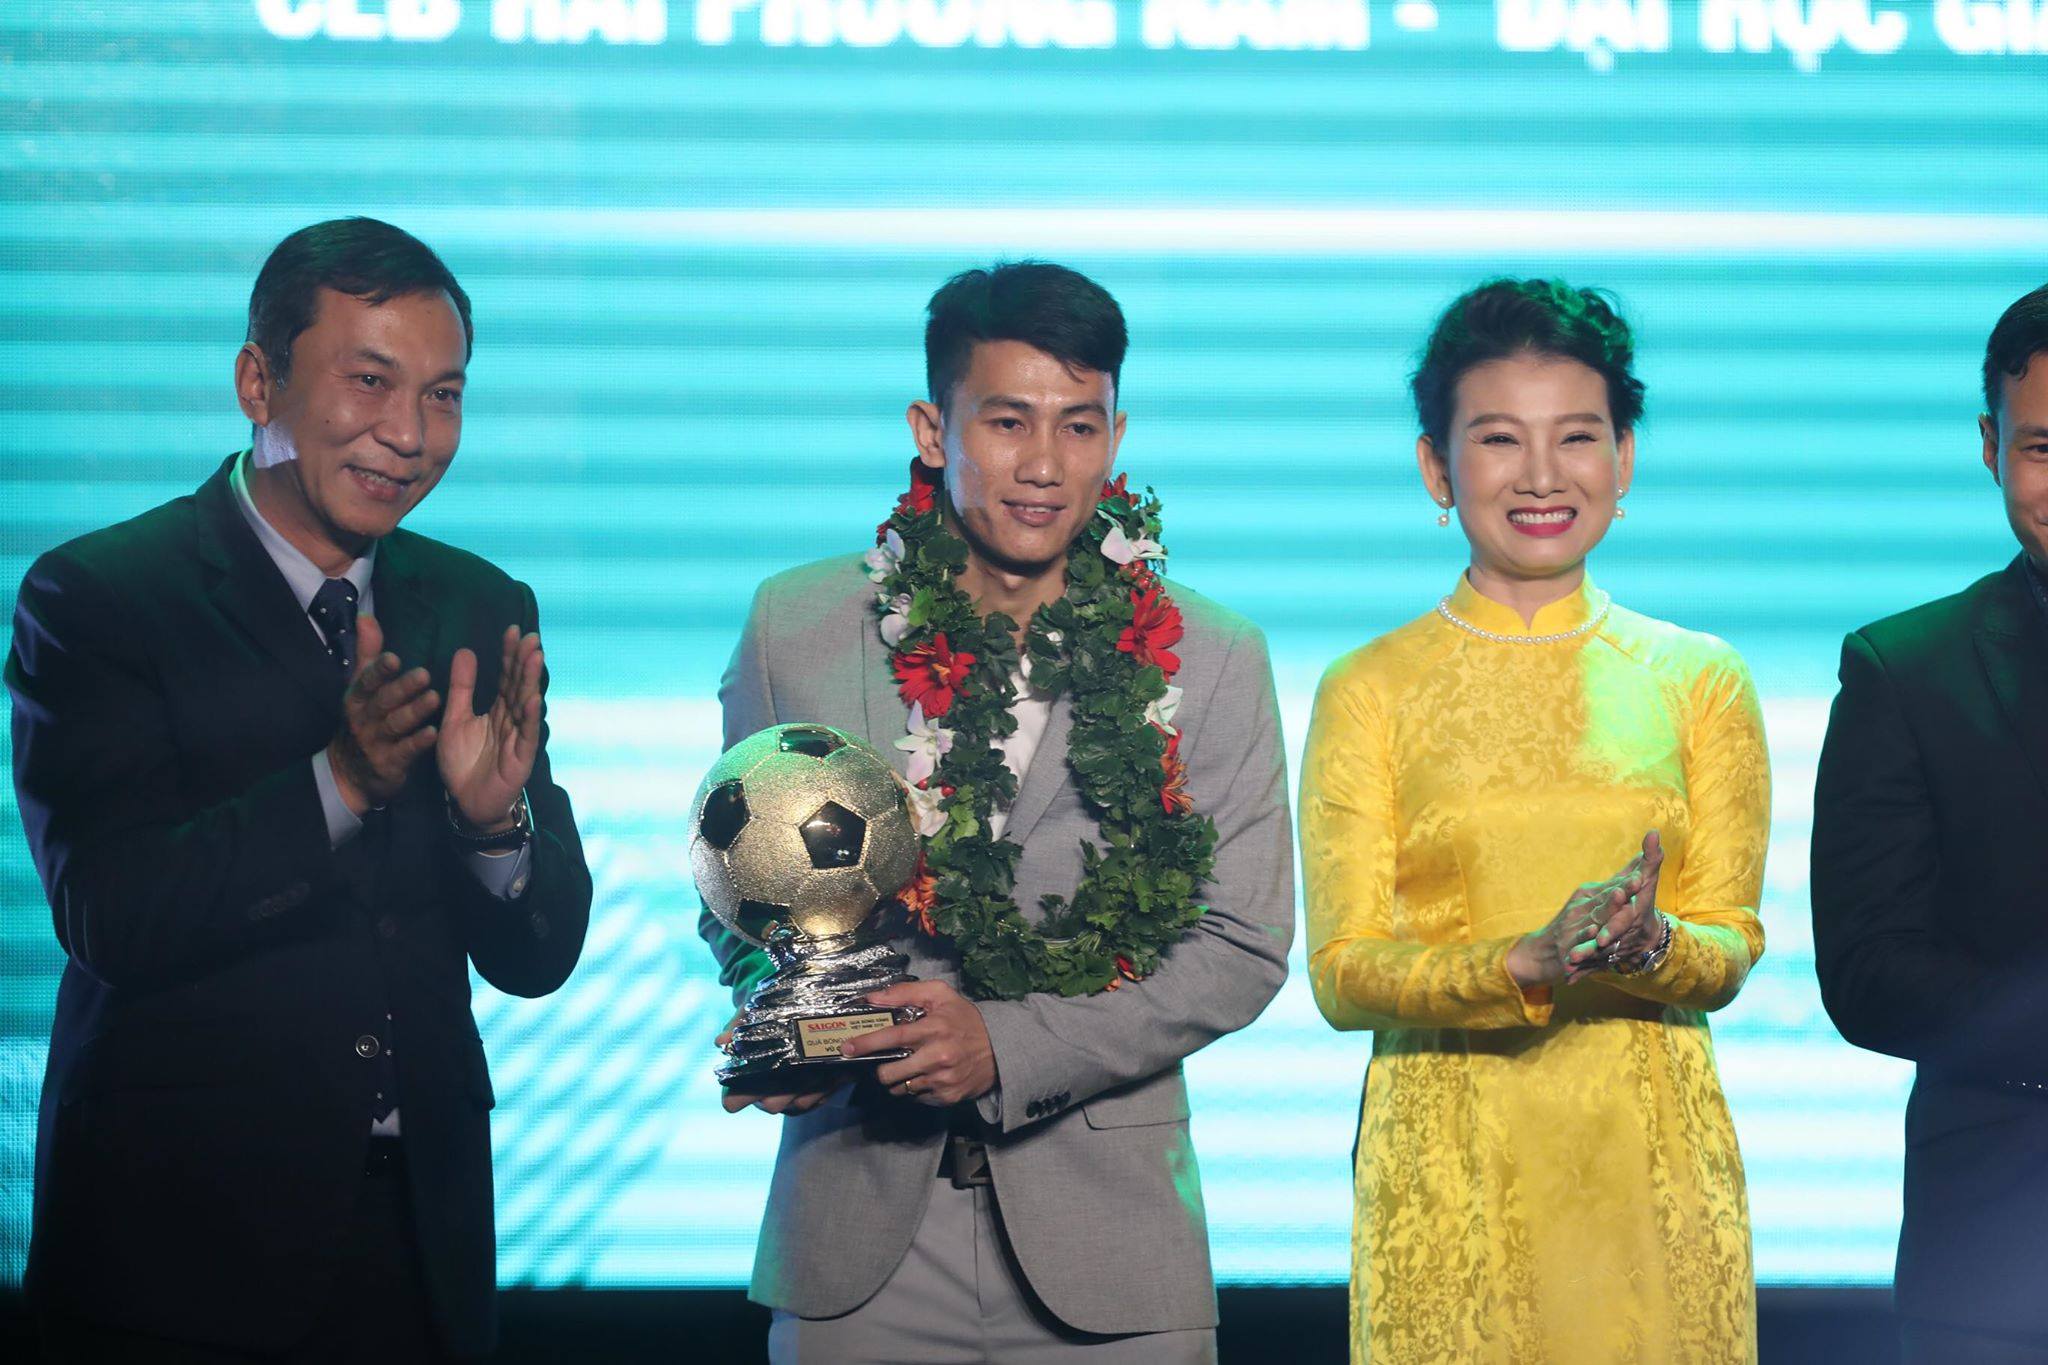 Vu Quoc Hung, a player of Hai Phuong Nam - GDU team receiving the 2018 Vietnam golden futsal ball award.